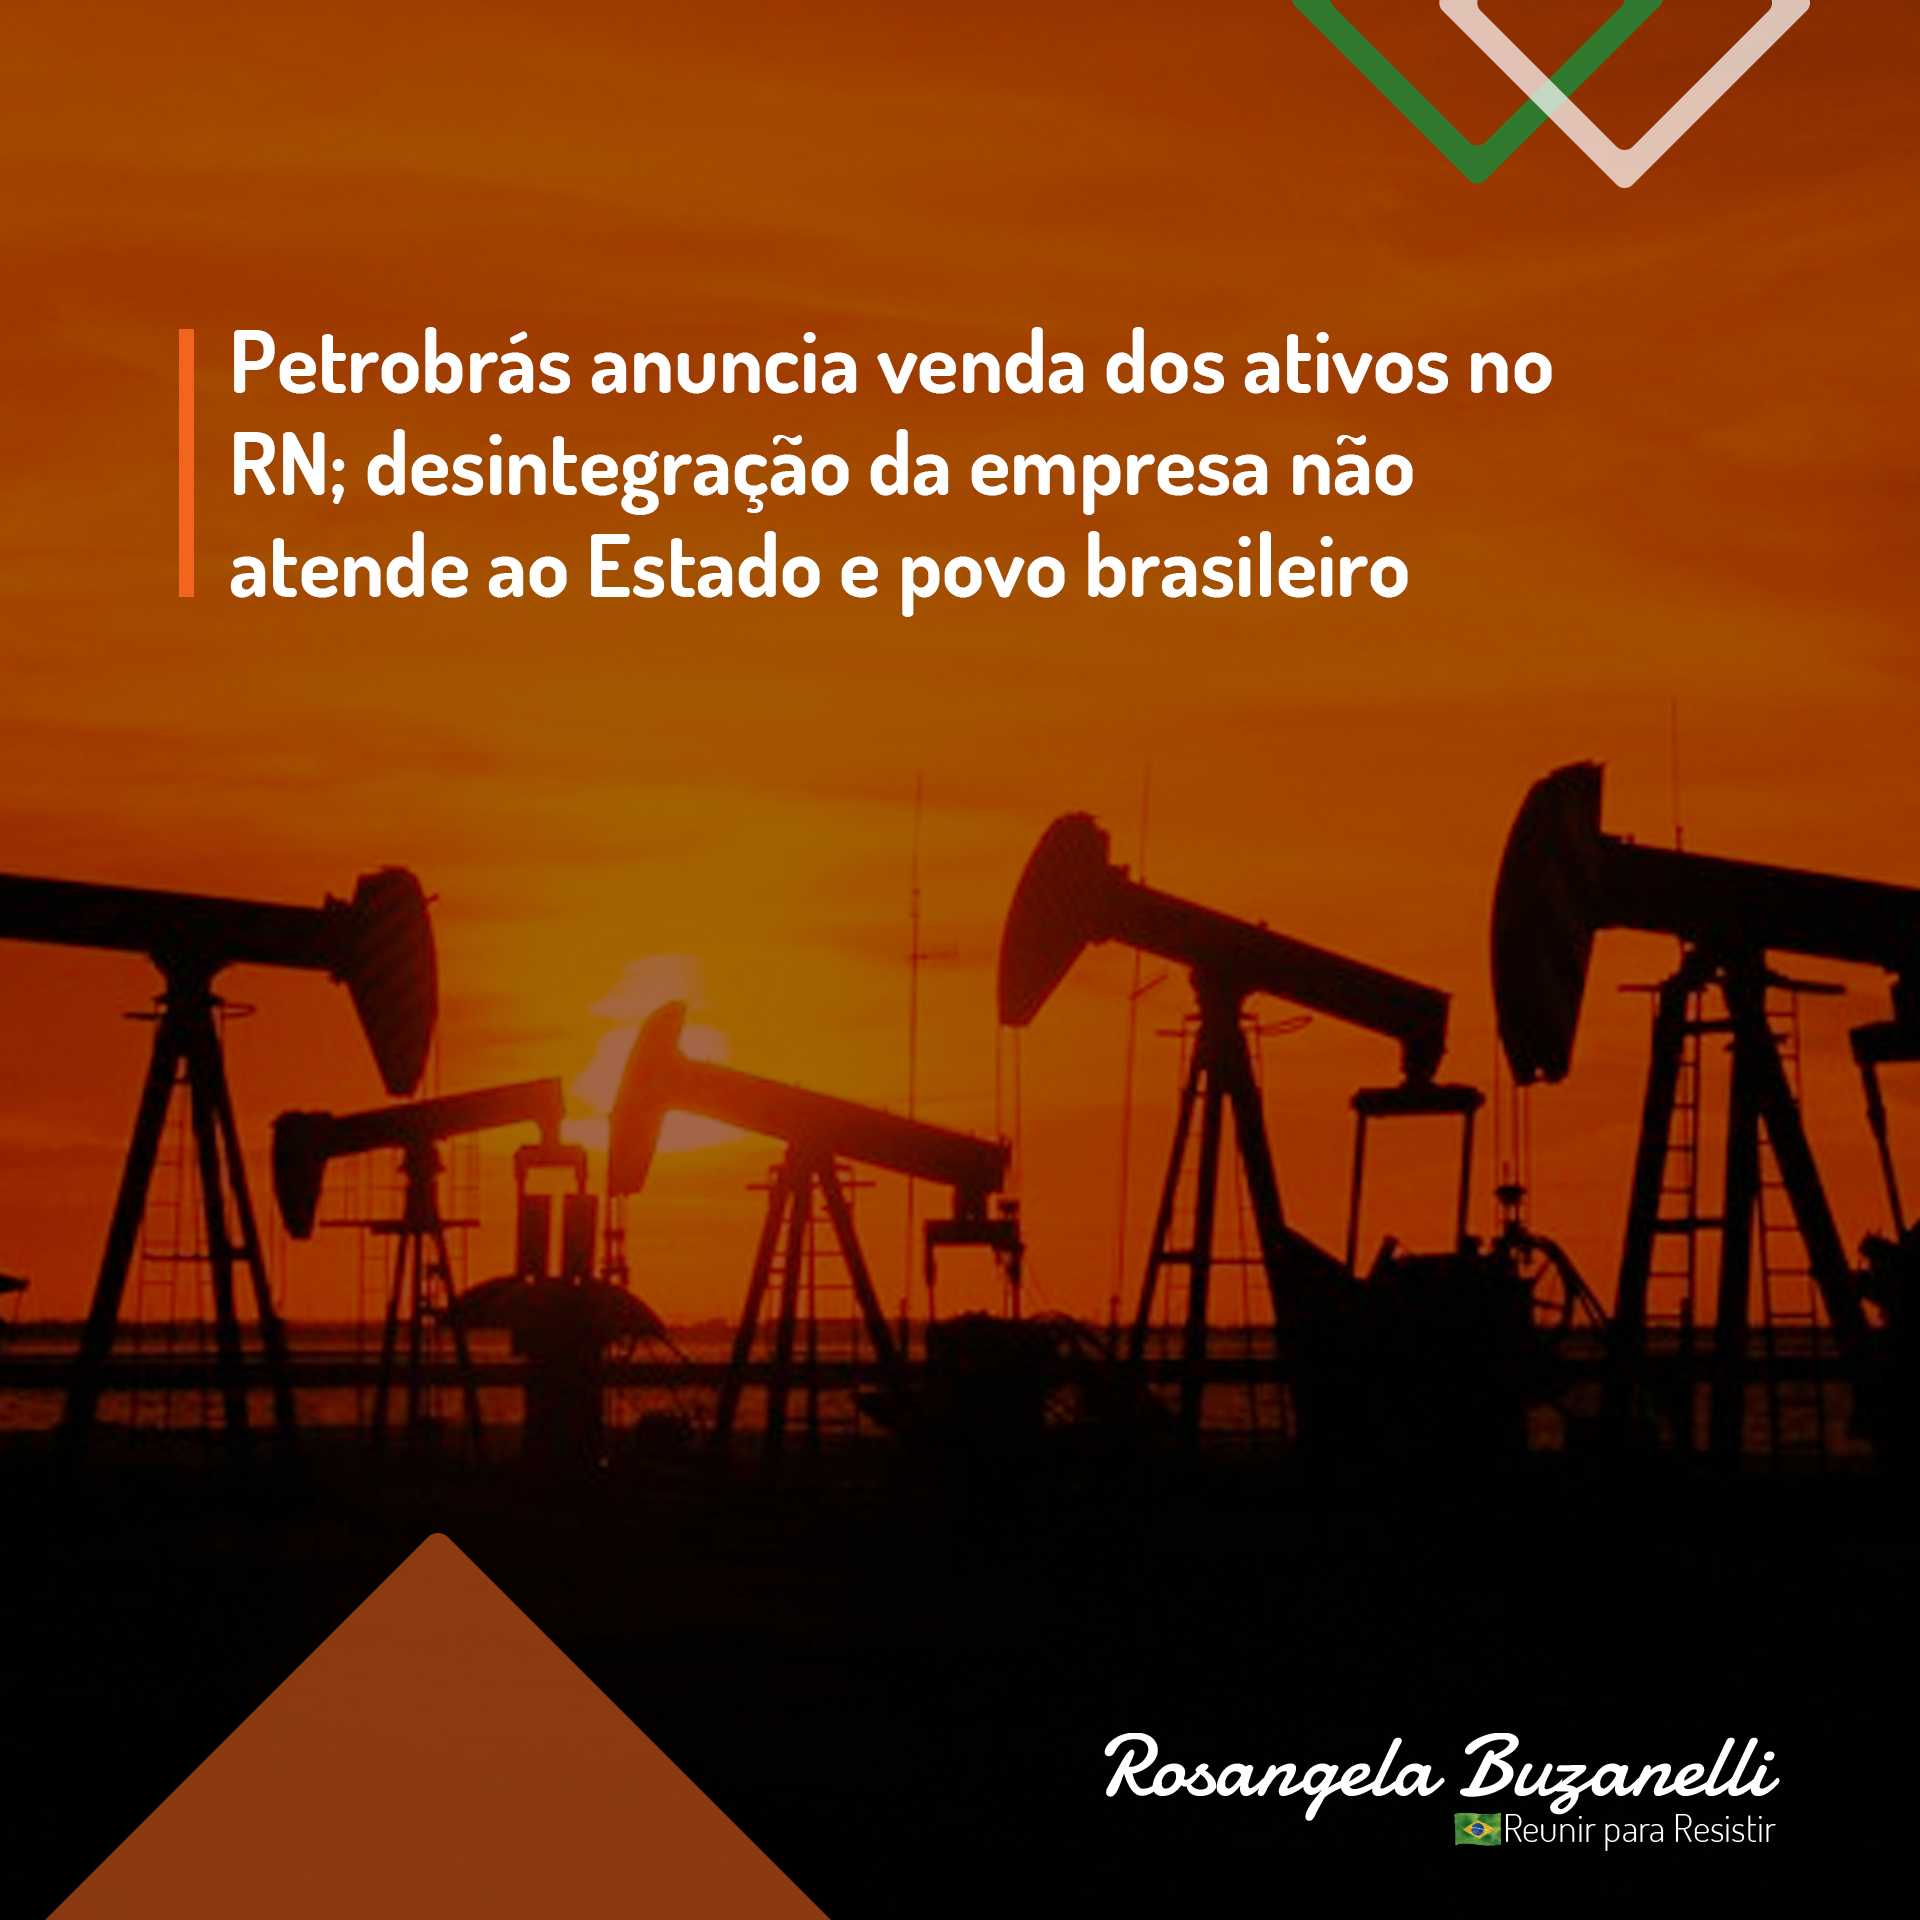 Petrobrás anuncia venda dos ativos no RN; desintegração da empresa não atende ao Estado e povo brasileiro